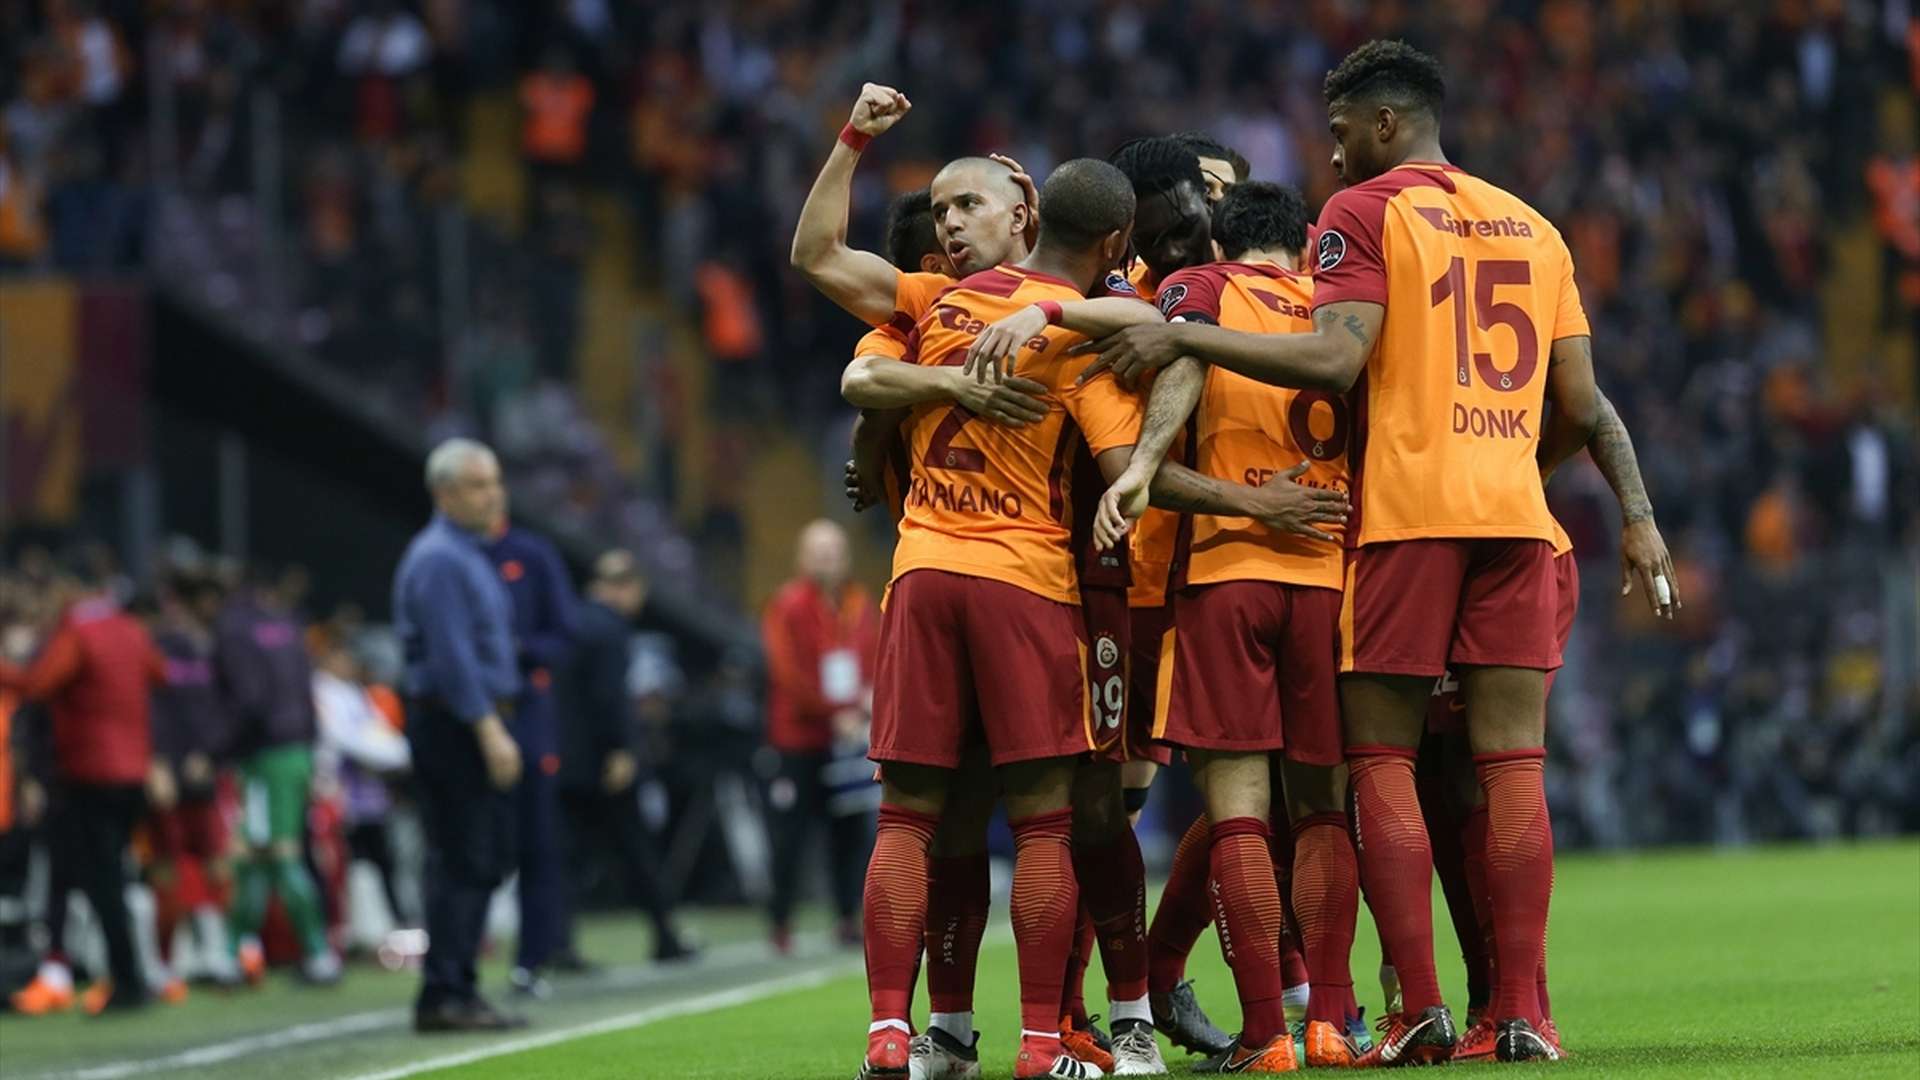 Galatasaray goal celebration 412018